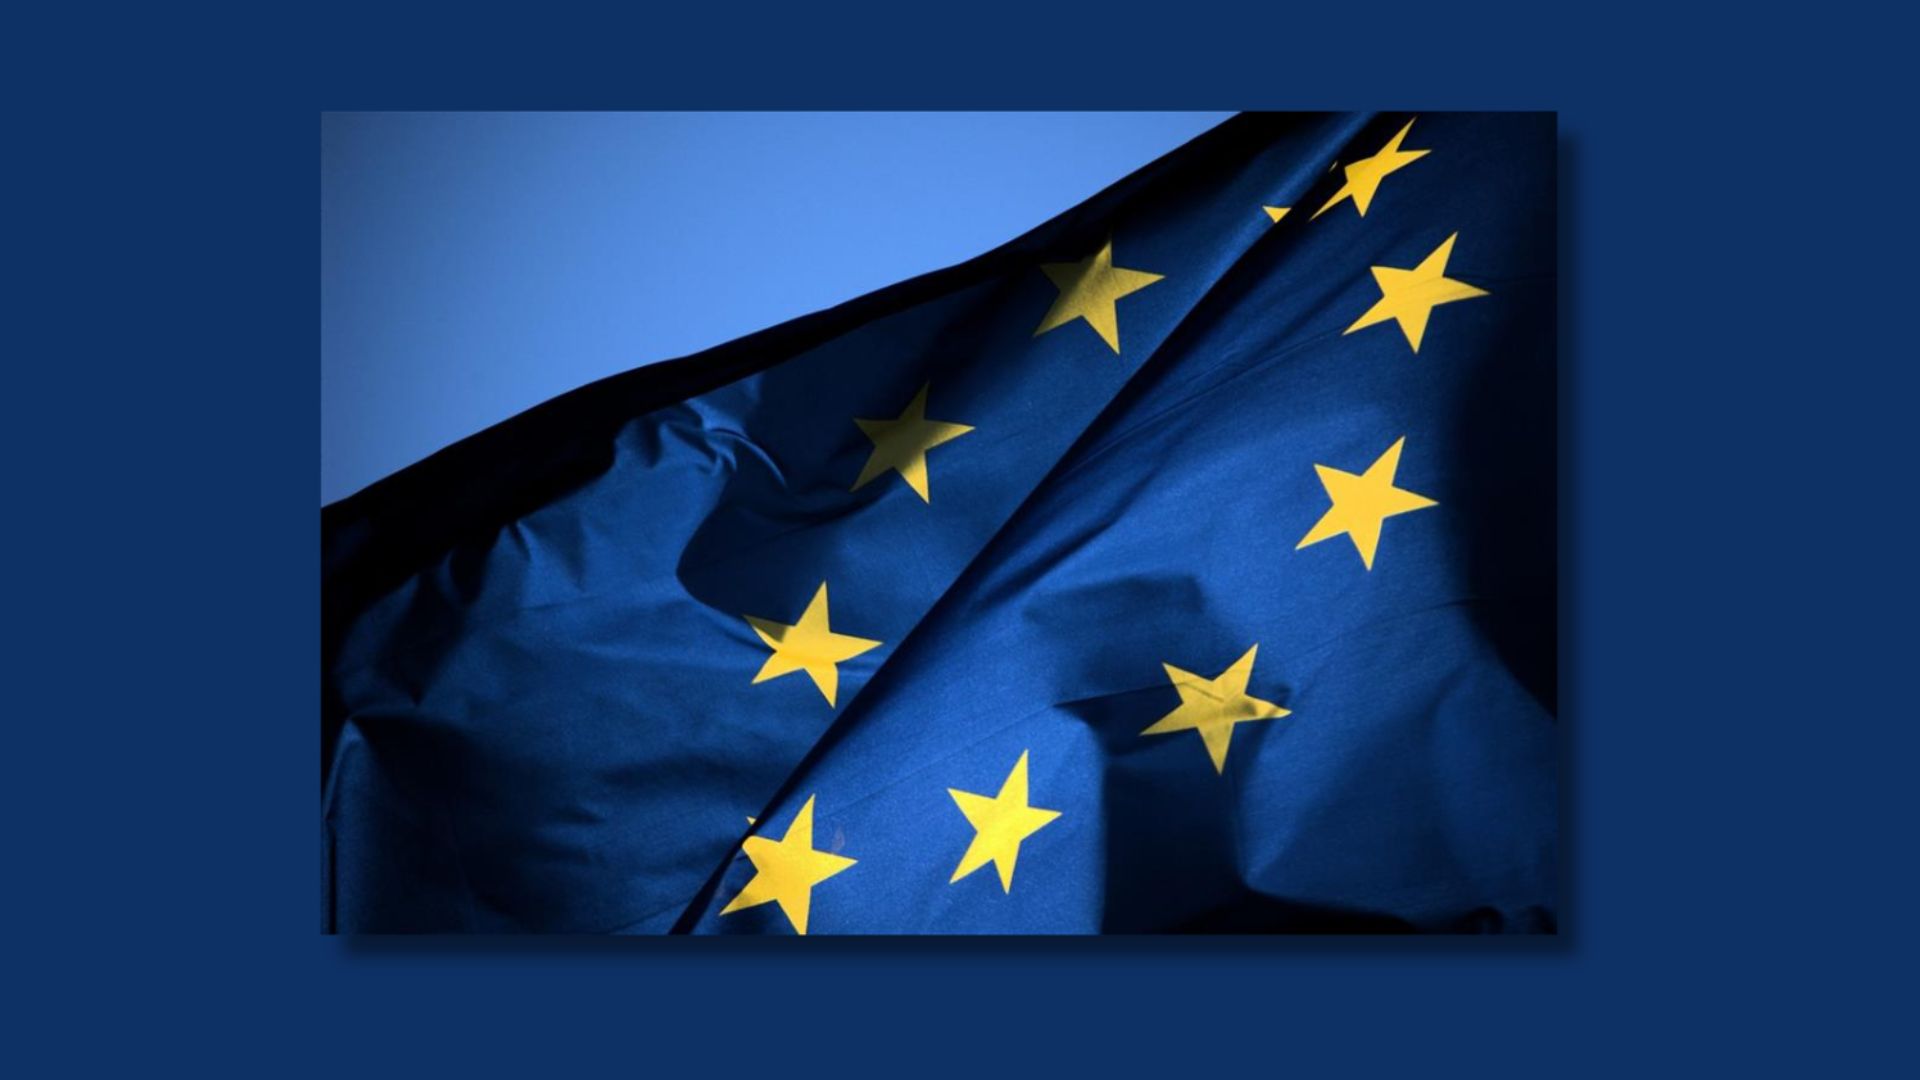 Assicuriamo ai sardi rappresentanza in Europa. Approviamo la legge sull’istituzione del collegio unico della Sardegna per le elezioni europee.